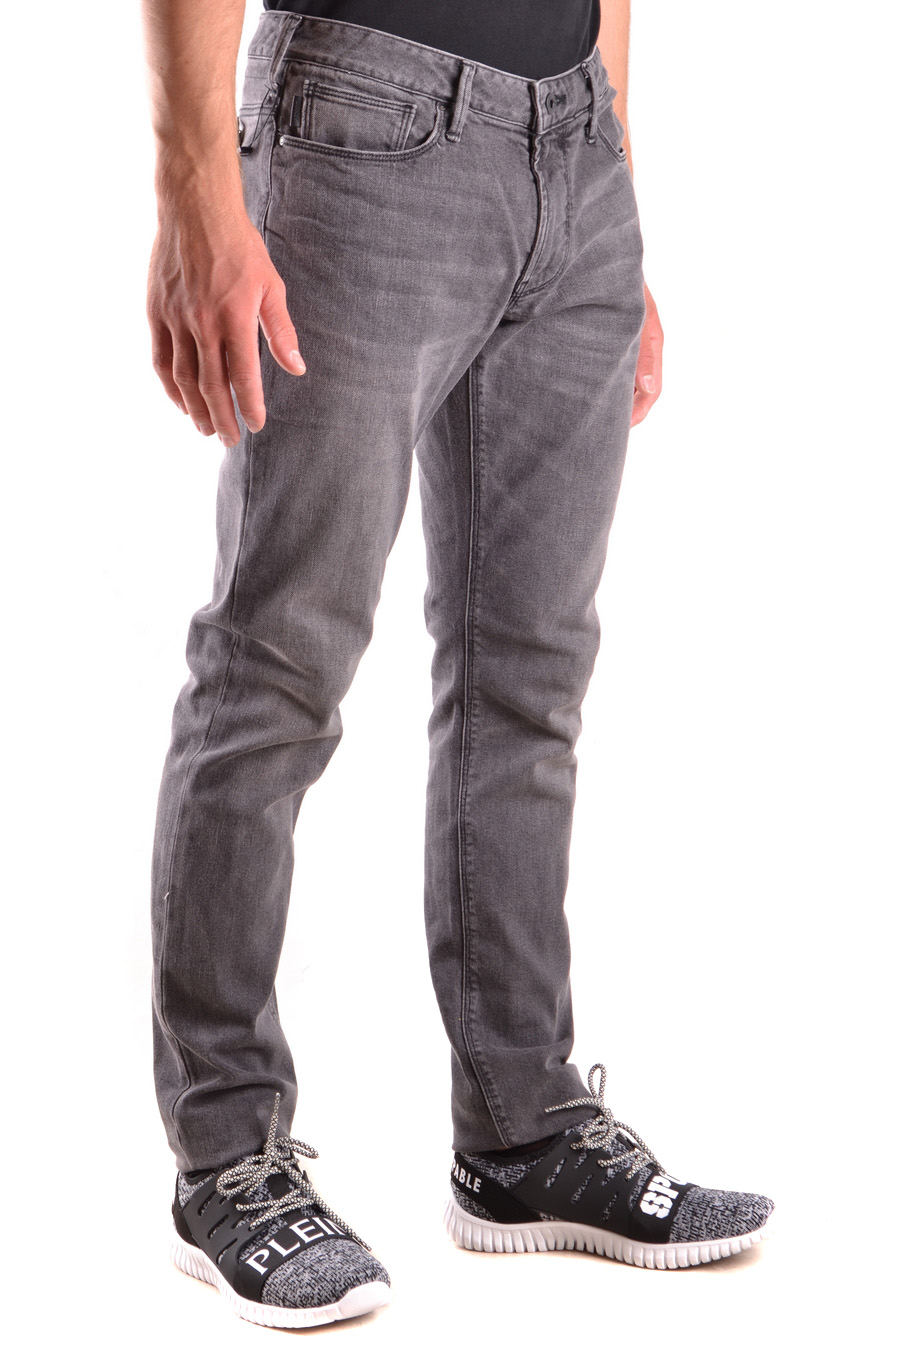 ARMANI JEANS Jeans | ViganoBoutique.com